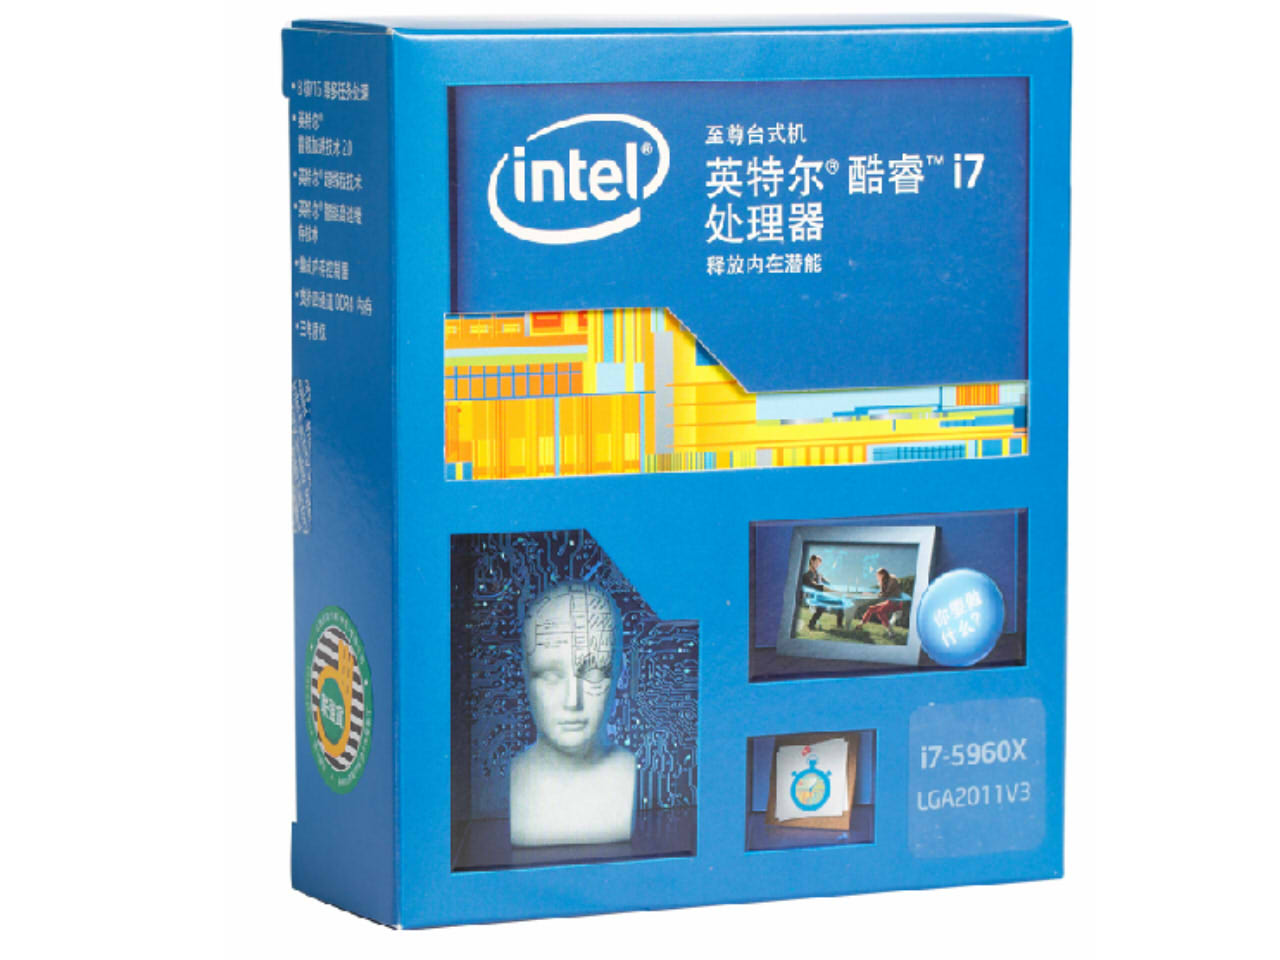 至尊八核 Intel i7 5960X 16线程限量特价:6998